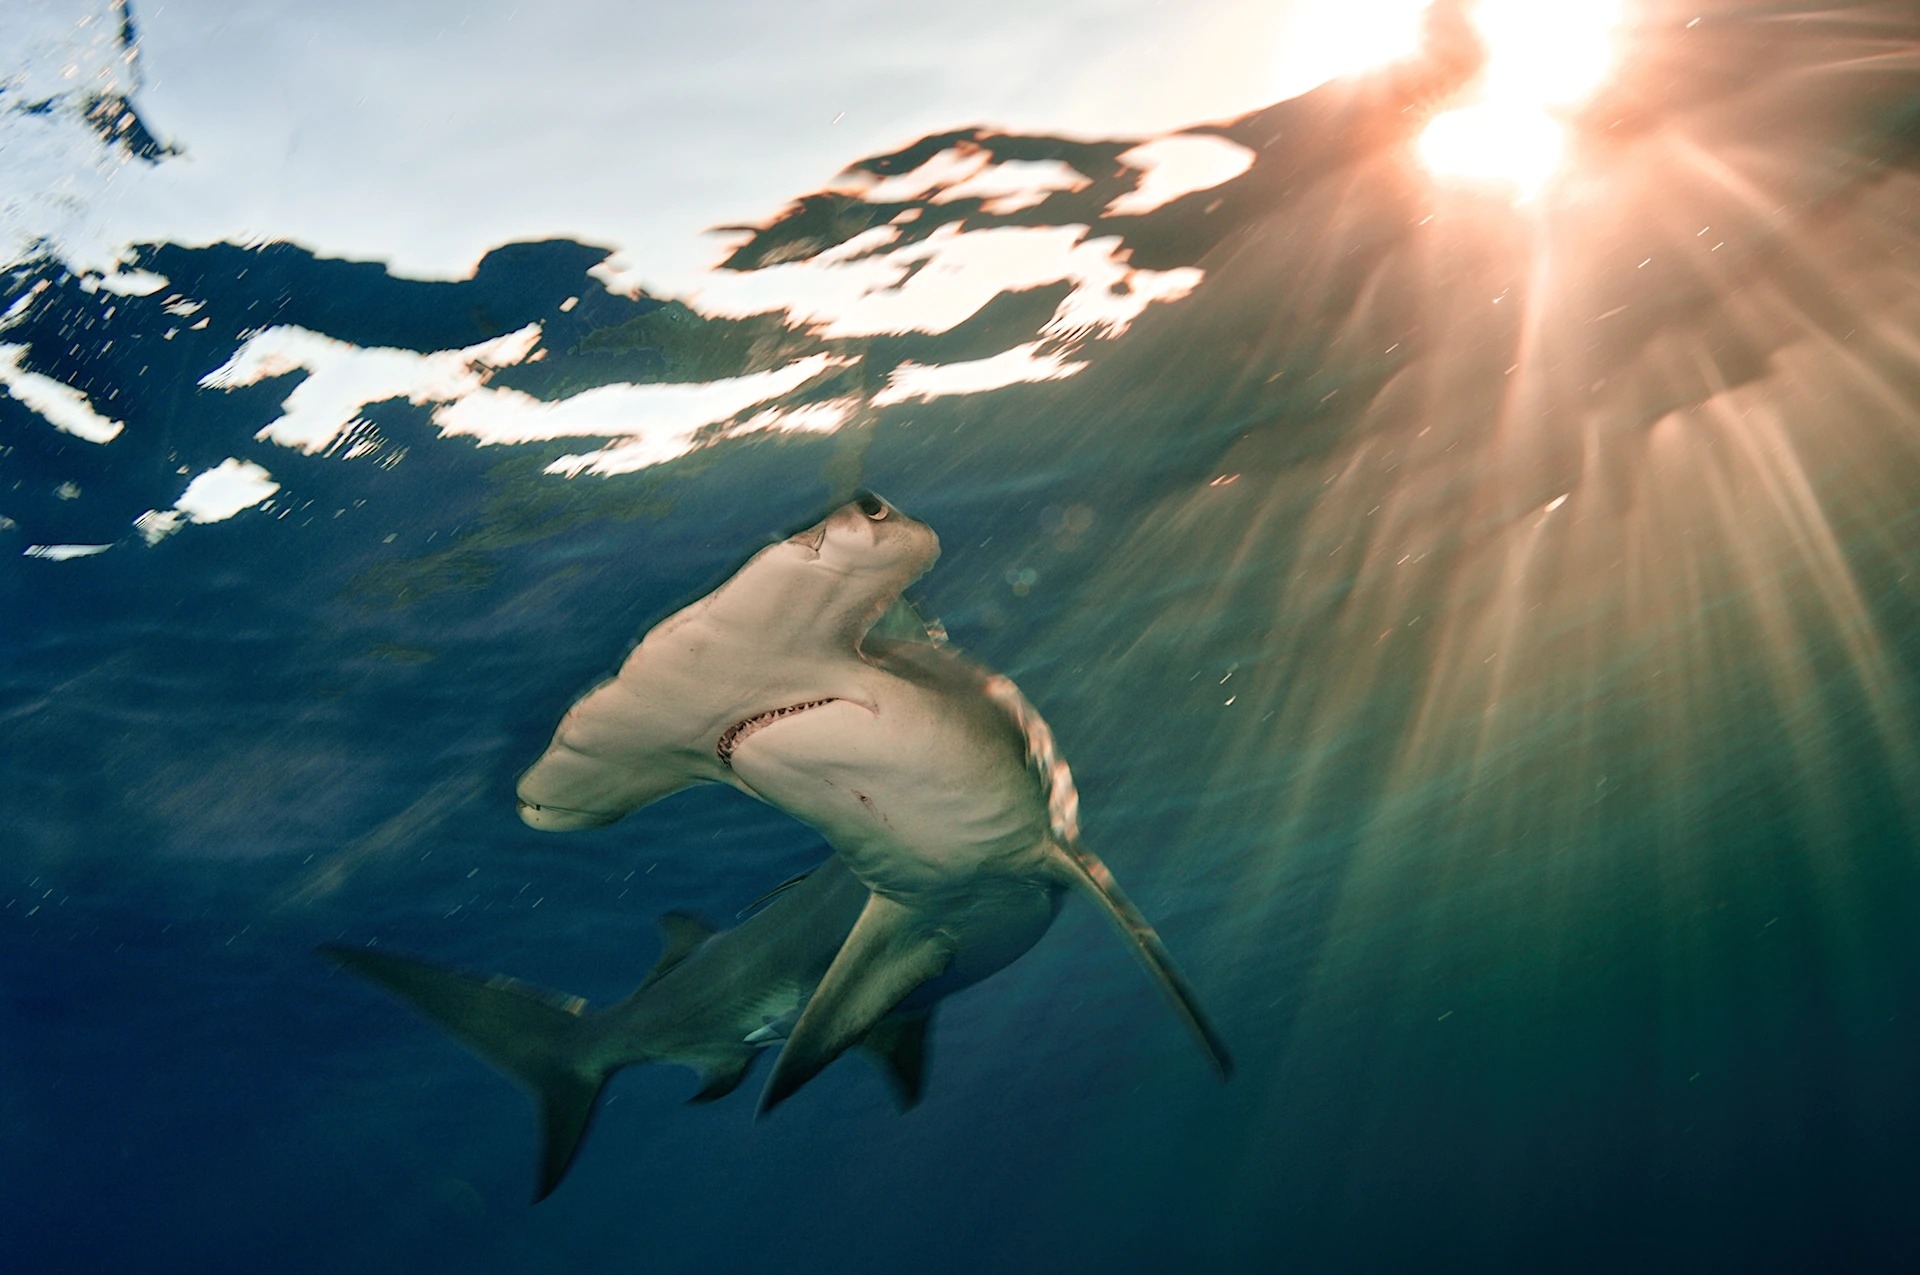 無溝雙髻鯊（照片攝於巴哈馬）是最大的雙髻鯊，體長可達將近6公尺。PHOTOGRAPH BY BRIAN J. SKERRY, NAT GEO IMAGE COLLECTION   